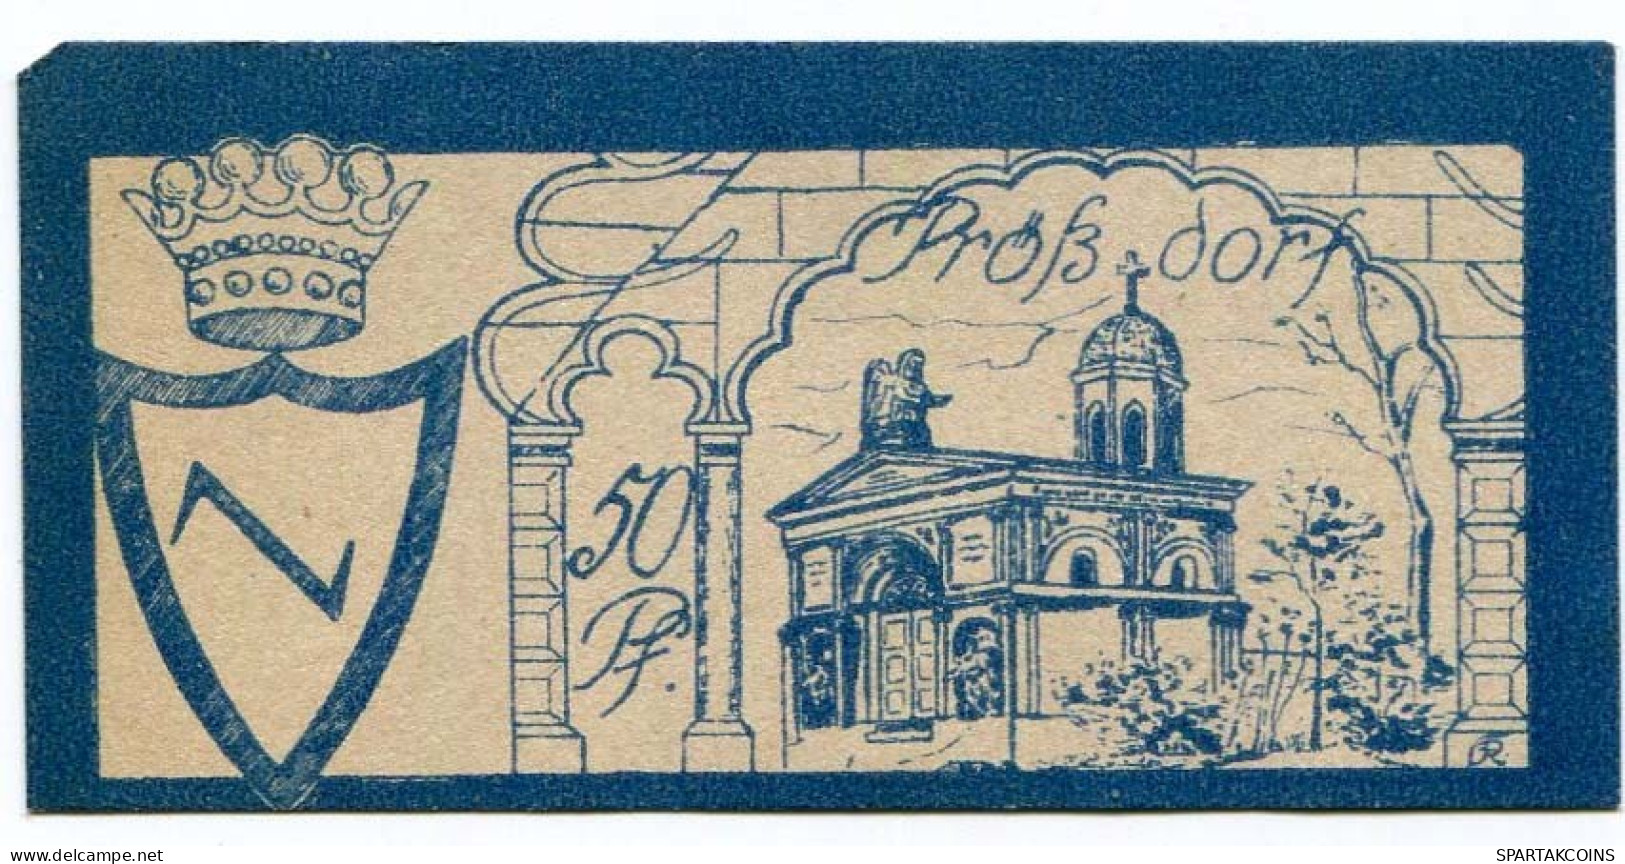 50 PFENNIG 1922 Stadt PRoSSDORF Thuringia DEUTSCHLAND Notgeld Papiergeld Banknote #PL723 - Lokale Ausgaben